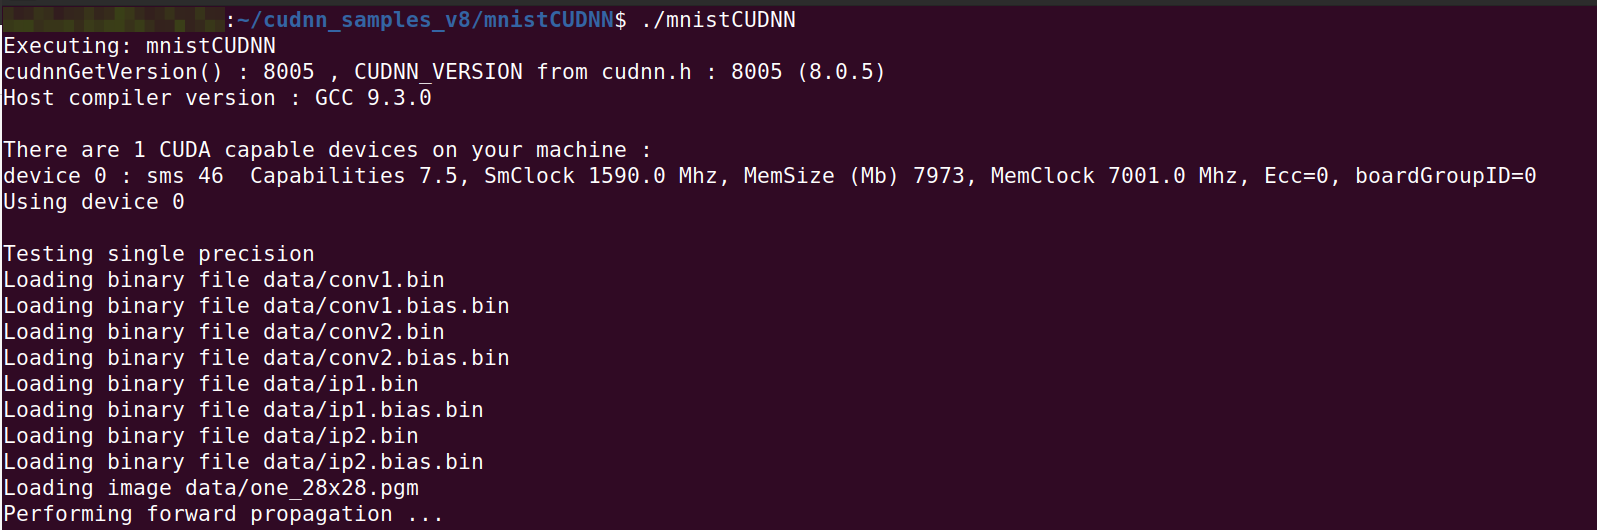 Ubuntu 20.04安装CUDA 11.0、cuDNN 8.0.5、PyTorch 1.7.0